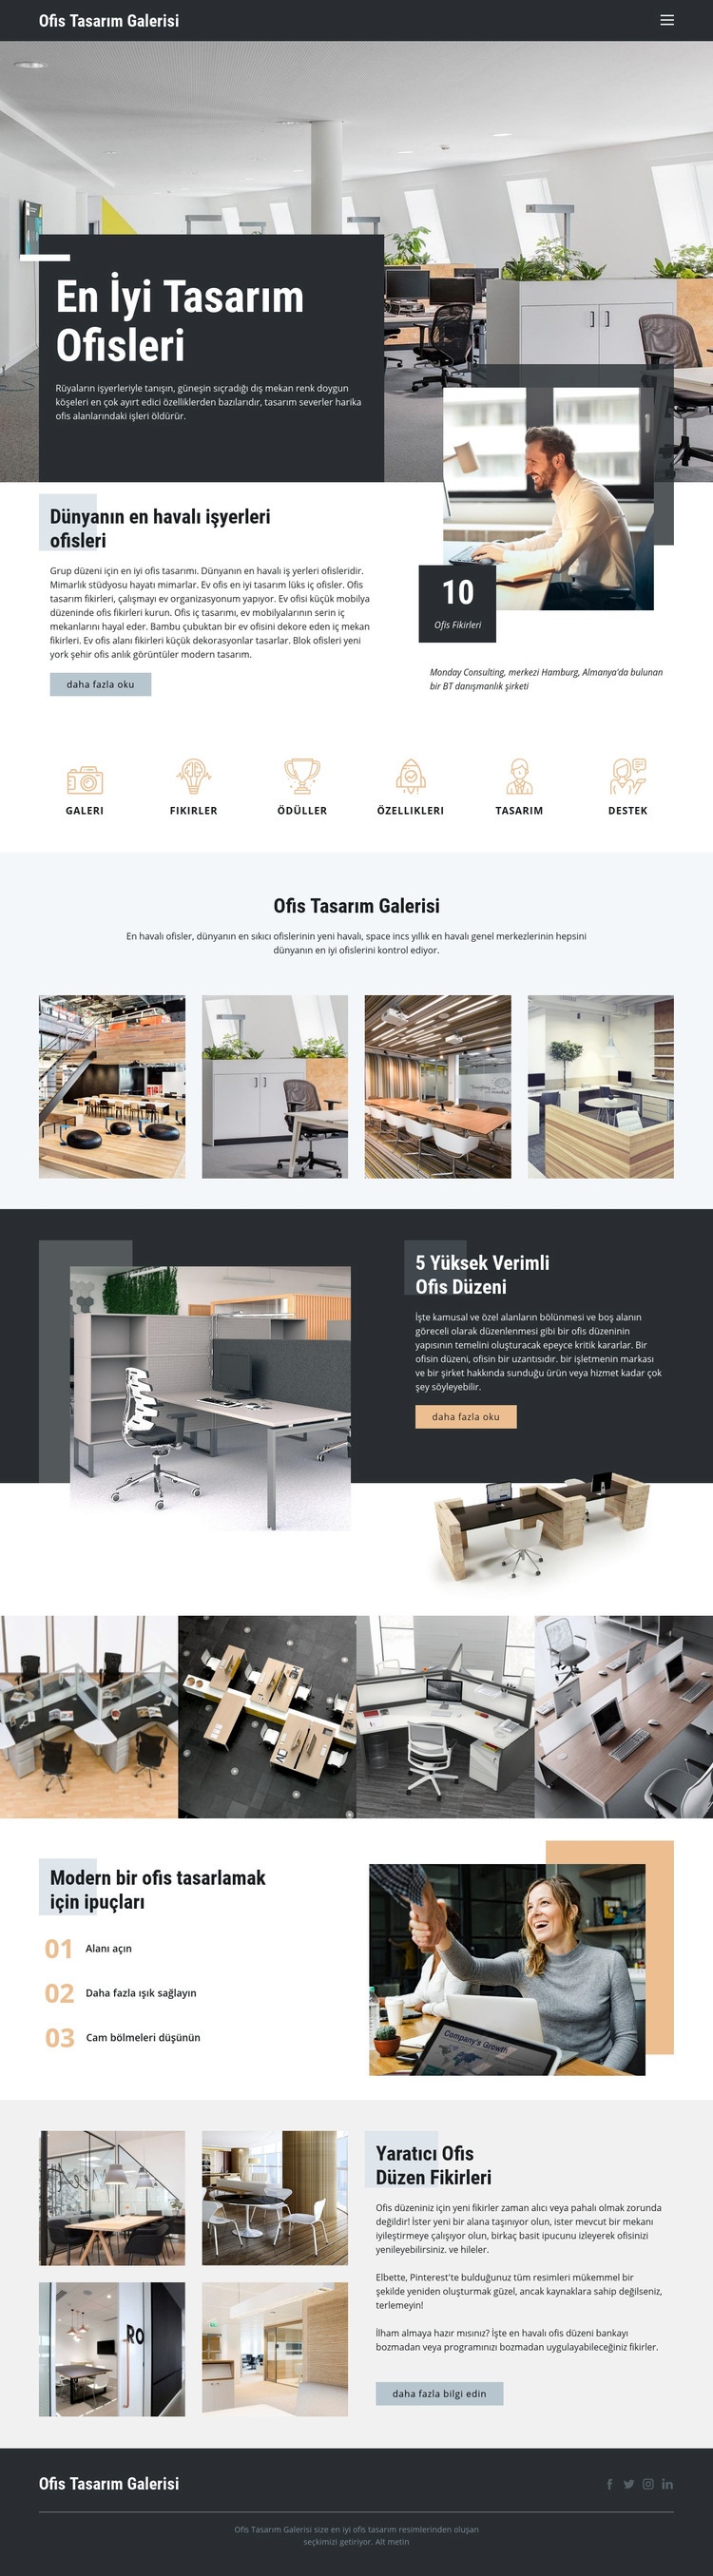 En İyi Tasarım Ofisleri Web sitesi tasarımı